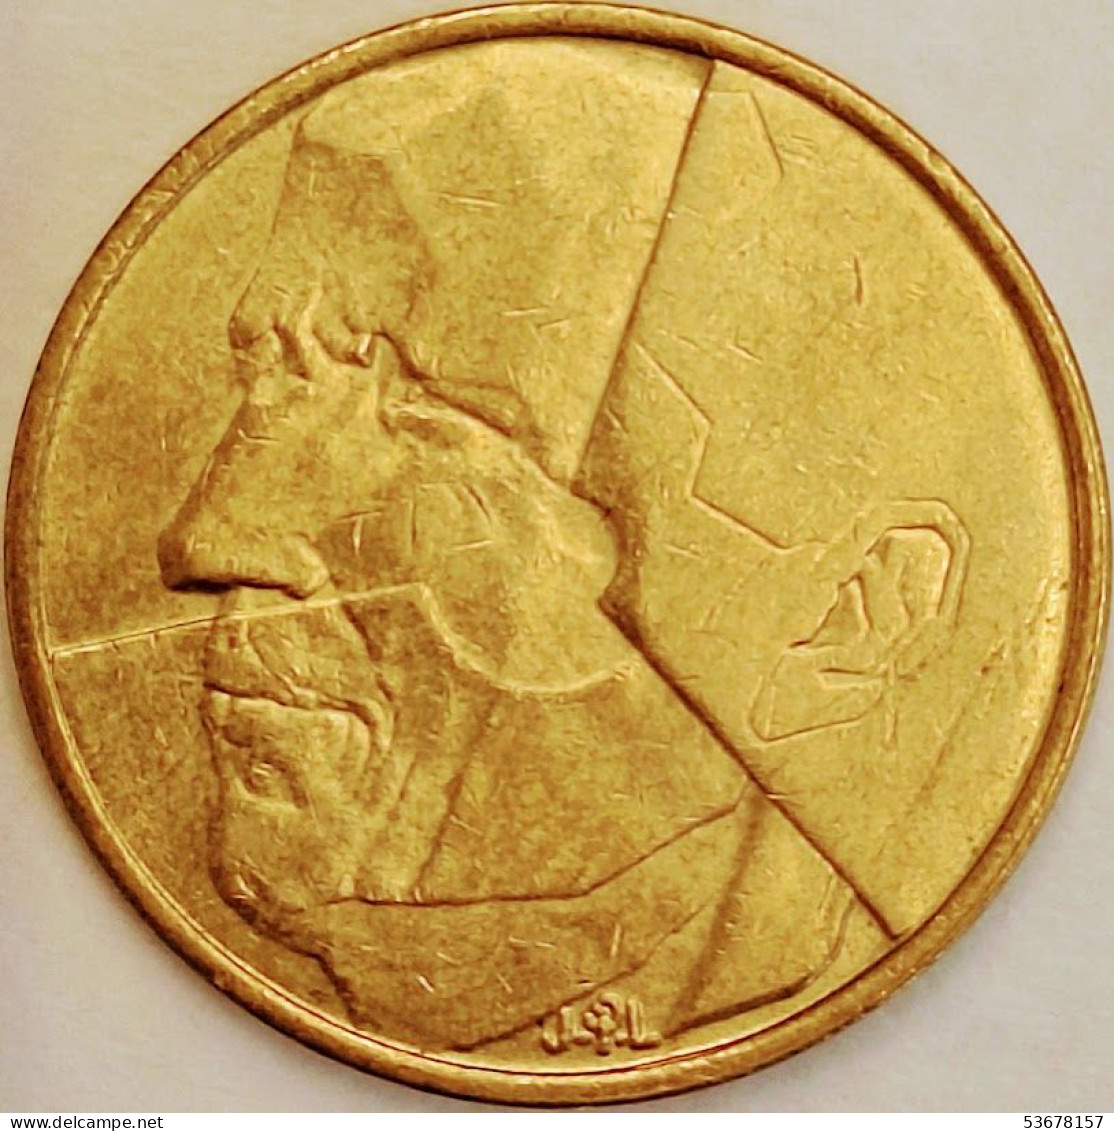 Belgium - 5 Francs 1986, KM# 164 (#3194) - 5 Francs